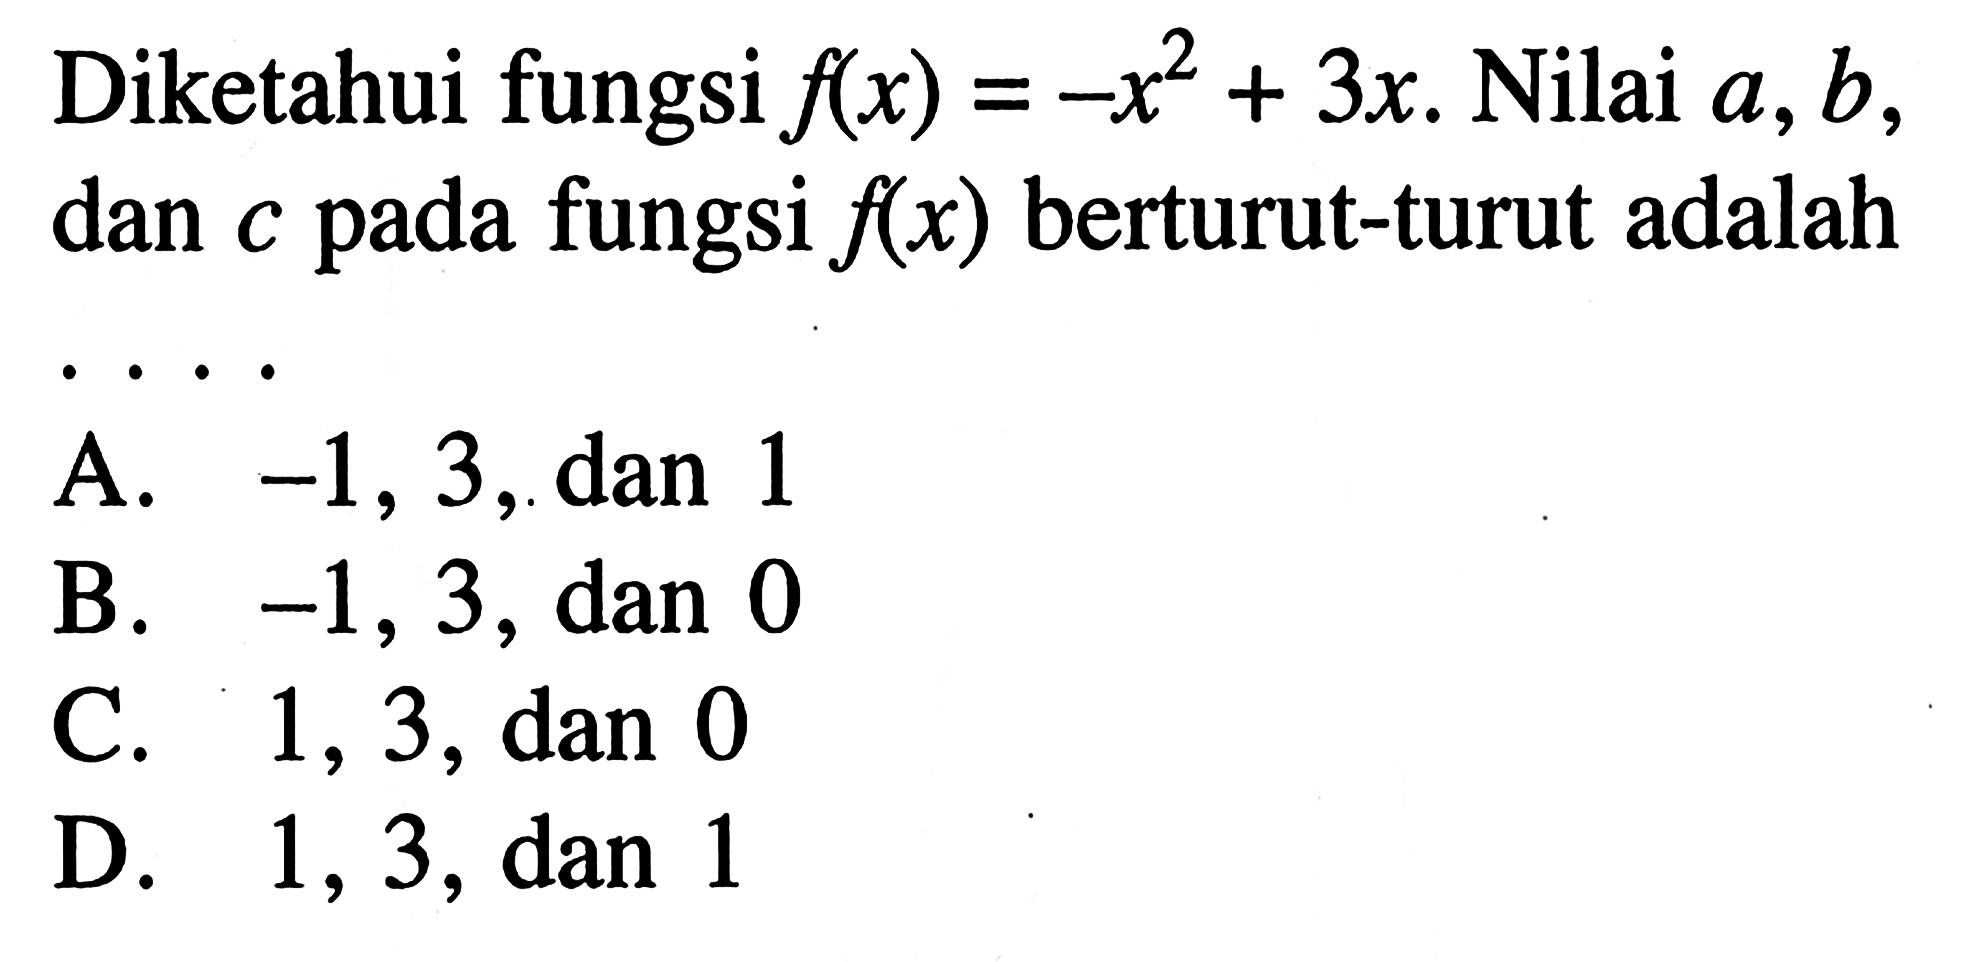 Diketahui fungsi flx) = -x^2 + 3x. Nilai a,b, dan c pada fungsi f(x) berturut-turut adalah... A. -1, 3, dan 1 B. -1, 3, dan 0 C. 1, 3, dan 0 D. 1, 3, dan 1